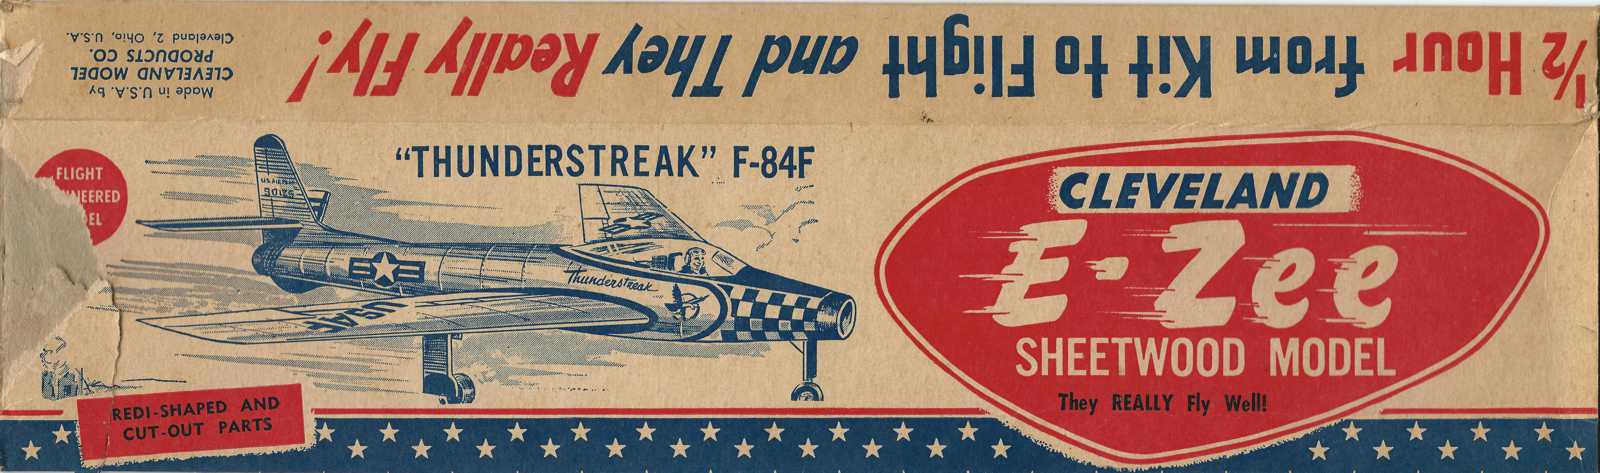 https://0201.nccdn.net/1_2/000/000/122/e11/Cleveland-E-Zee--F-84F-Thunderstreak-Box-Front.jpg